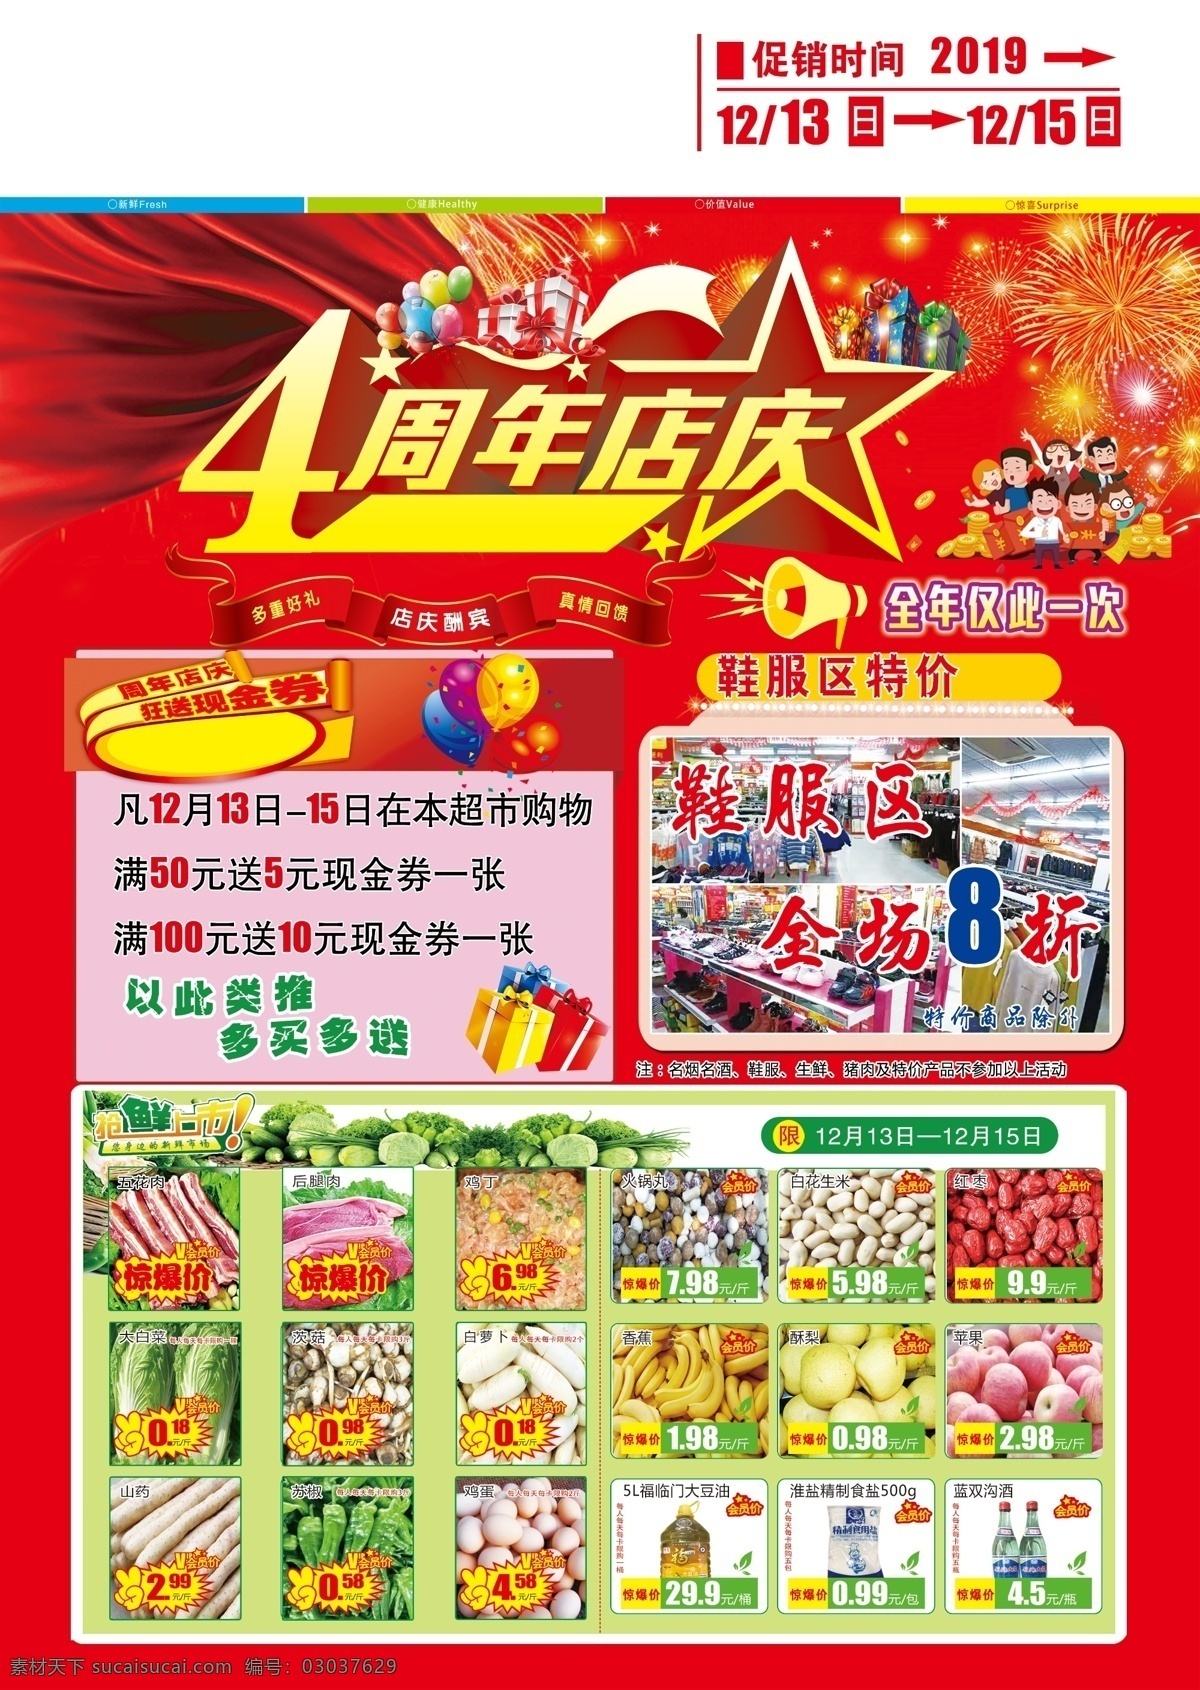 4周年庆正 底图 促销产品价格 彩色图片 字体 超市宣传单